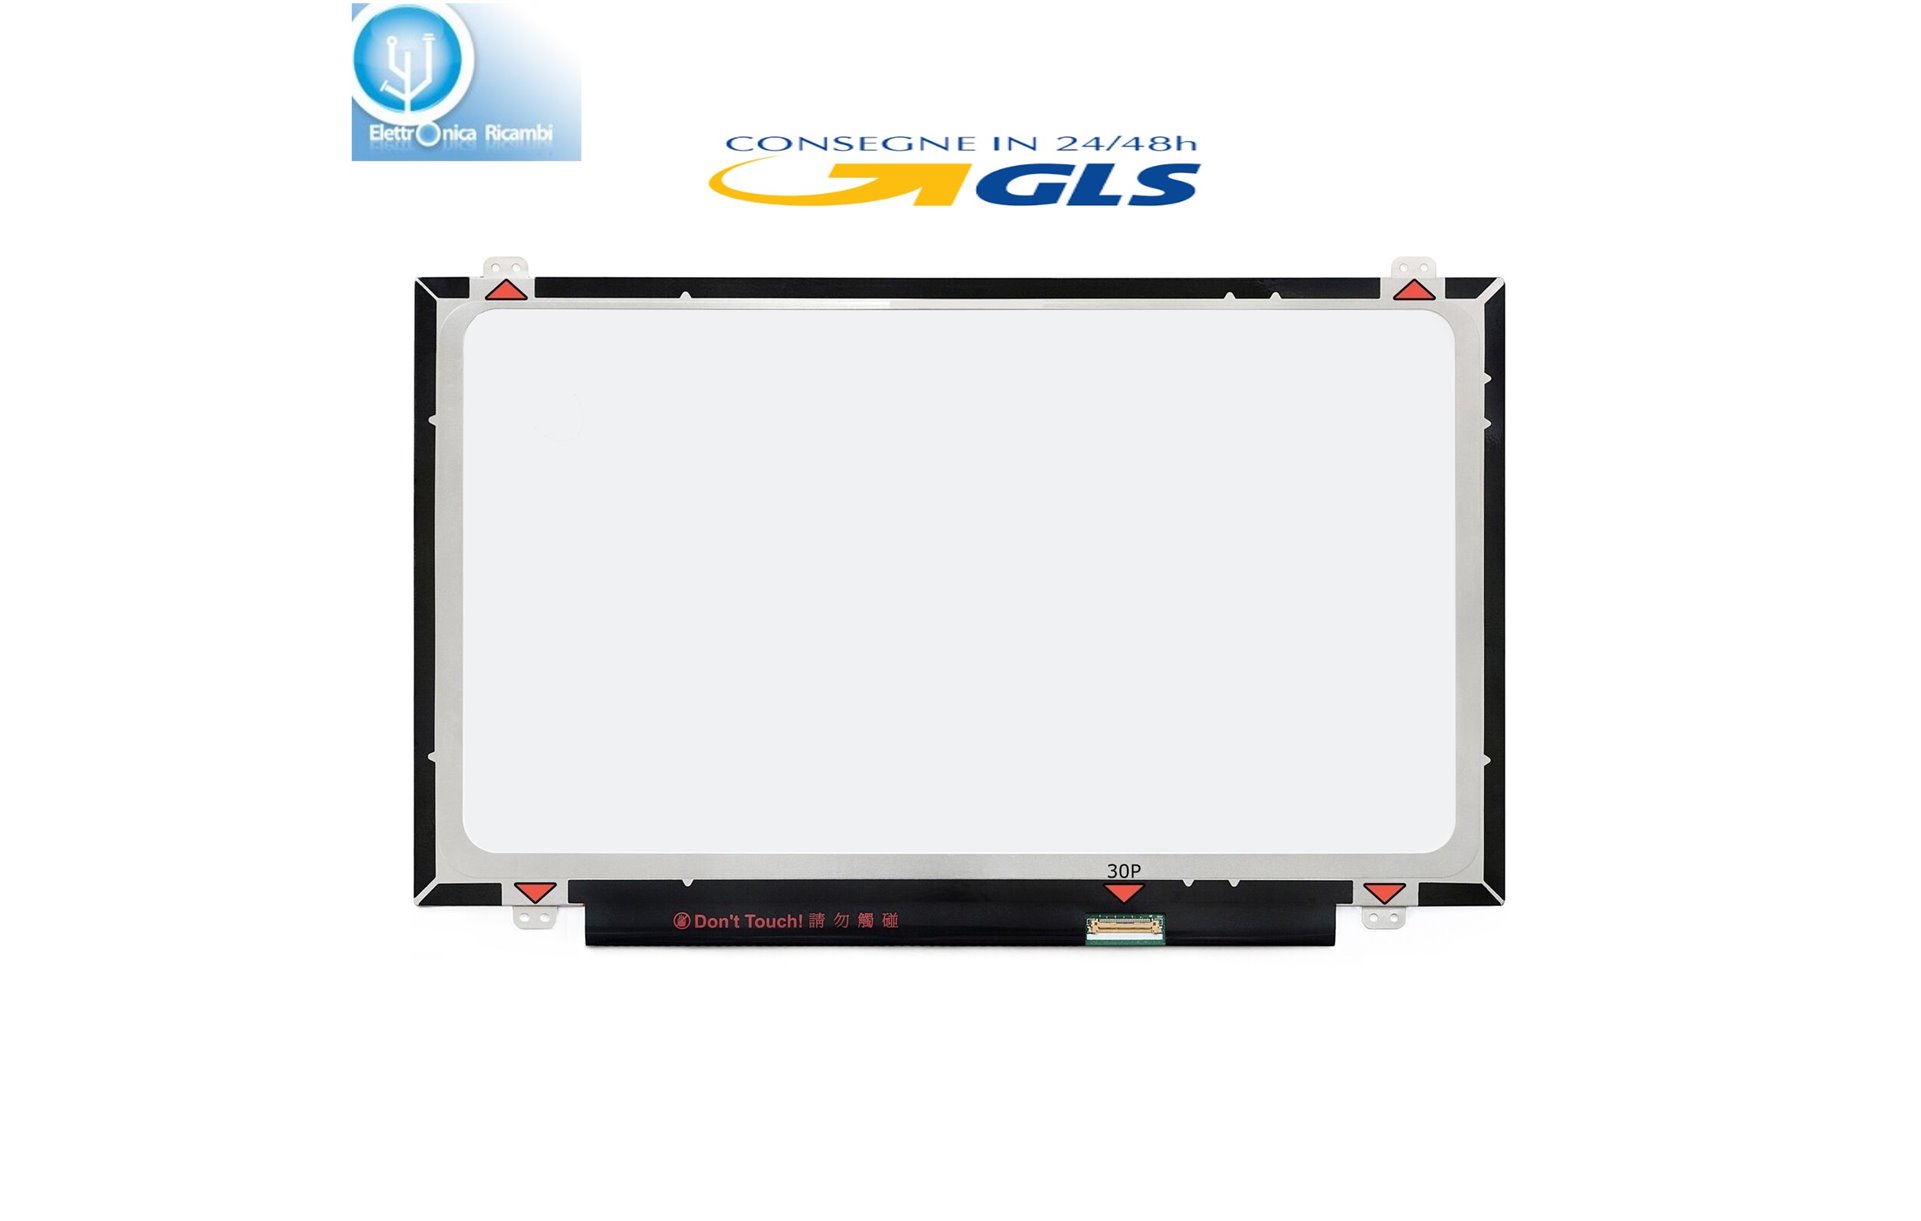 LP140WHU(TP)(H1) Display lcd schermo led Slim 30 pin wxga hd (1366x768)